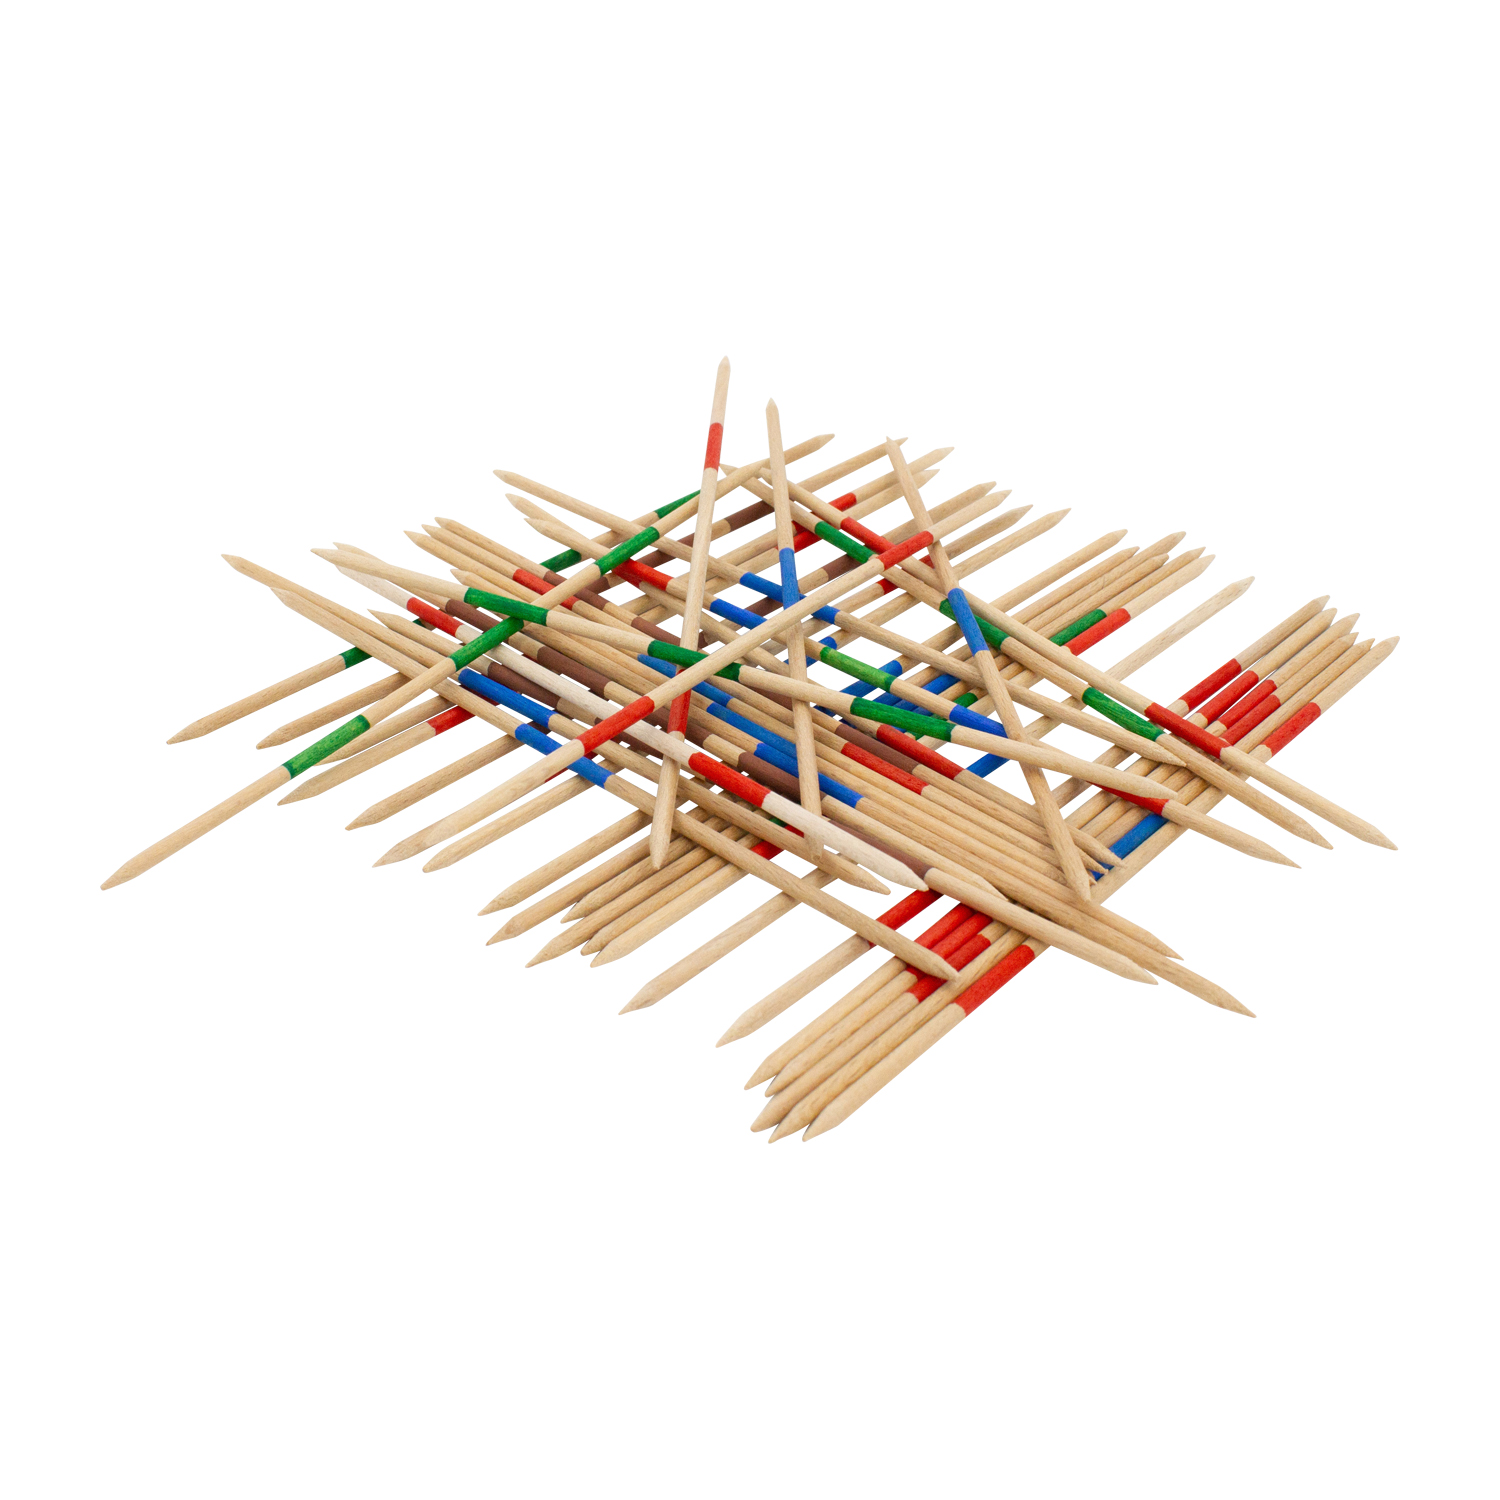 Mikado Spiel aus Holz Kinder Erwachsene im Köcher zur Aufbewahrung, Länge 22 cm , Mikado Stäbchenlänge 18 cm - 103